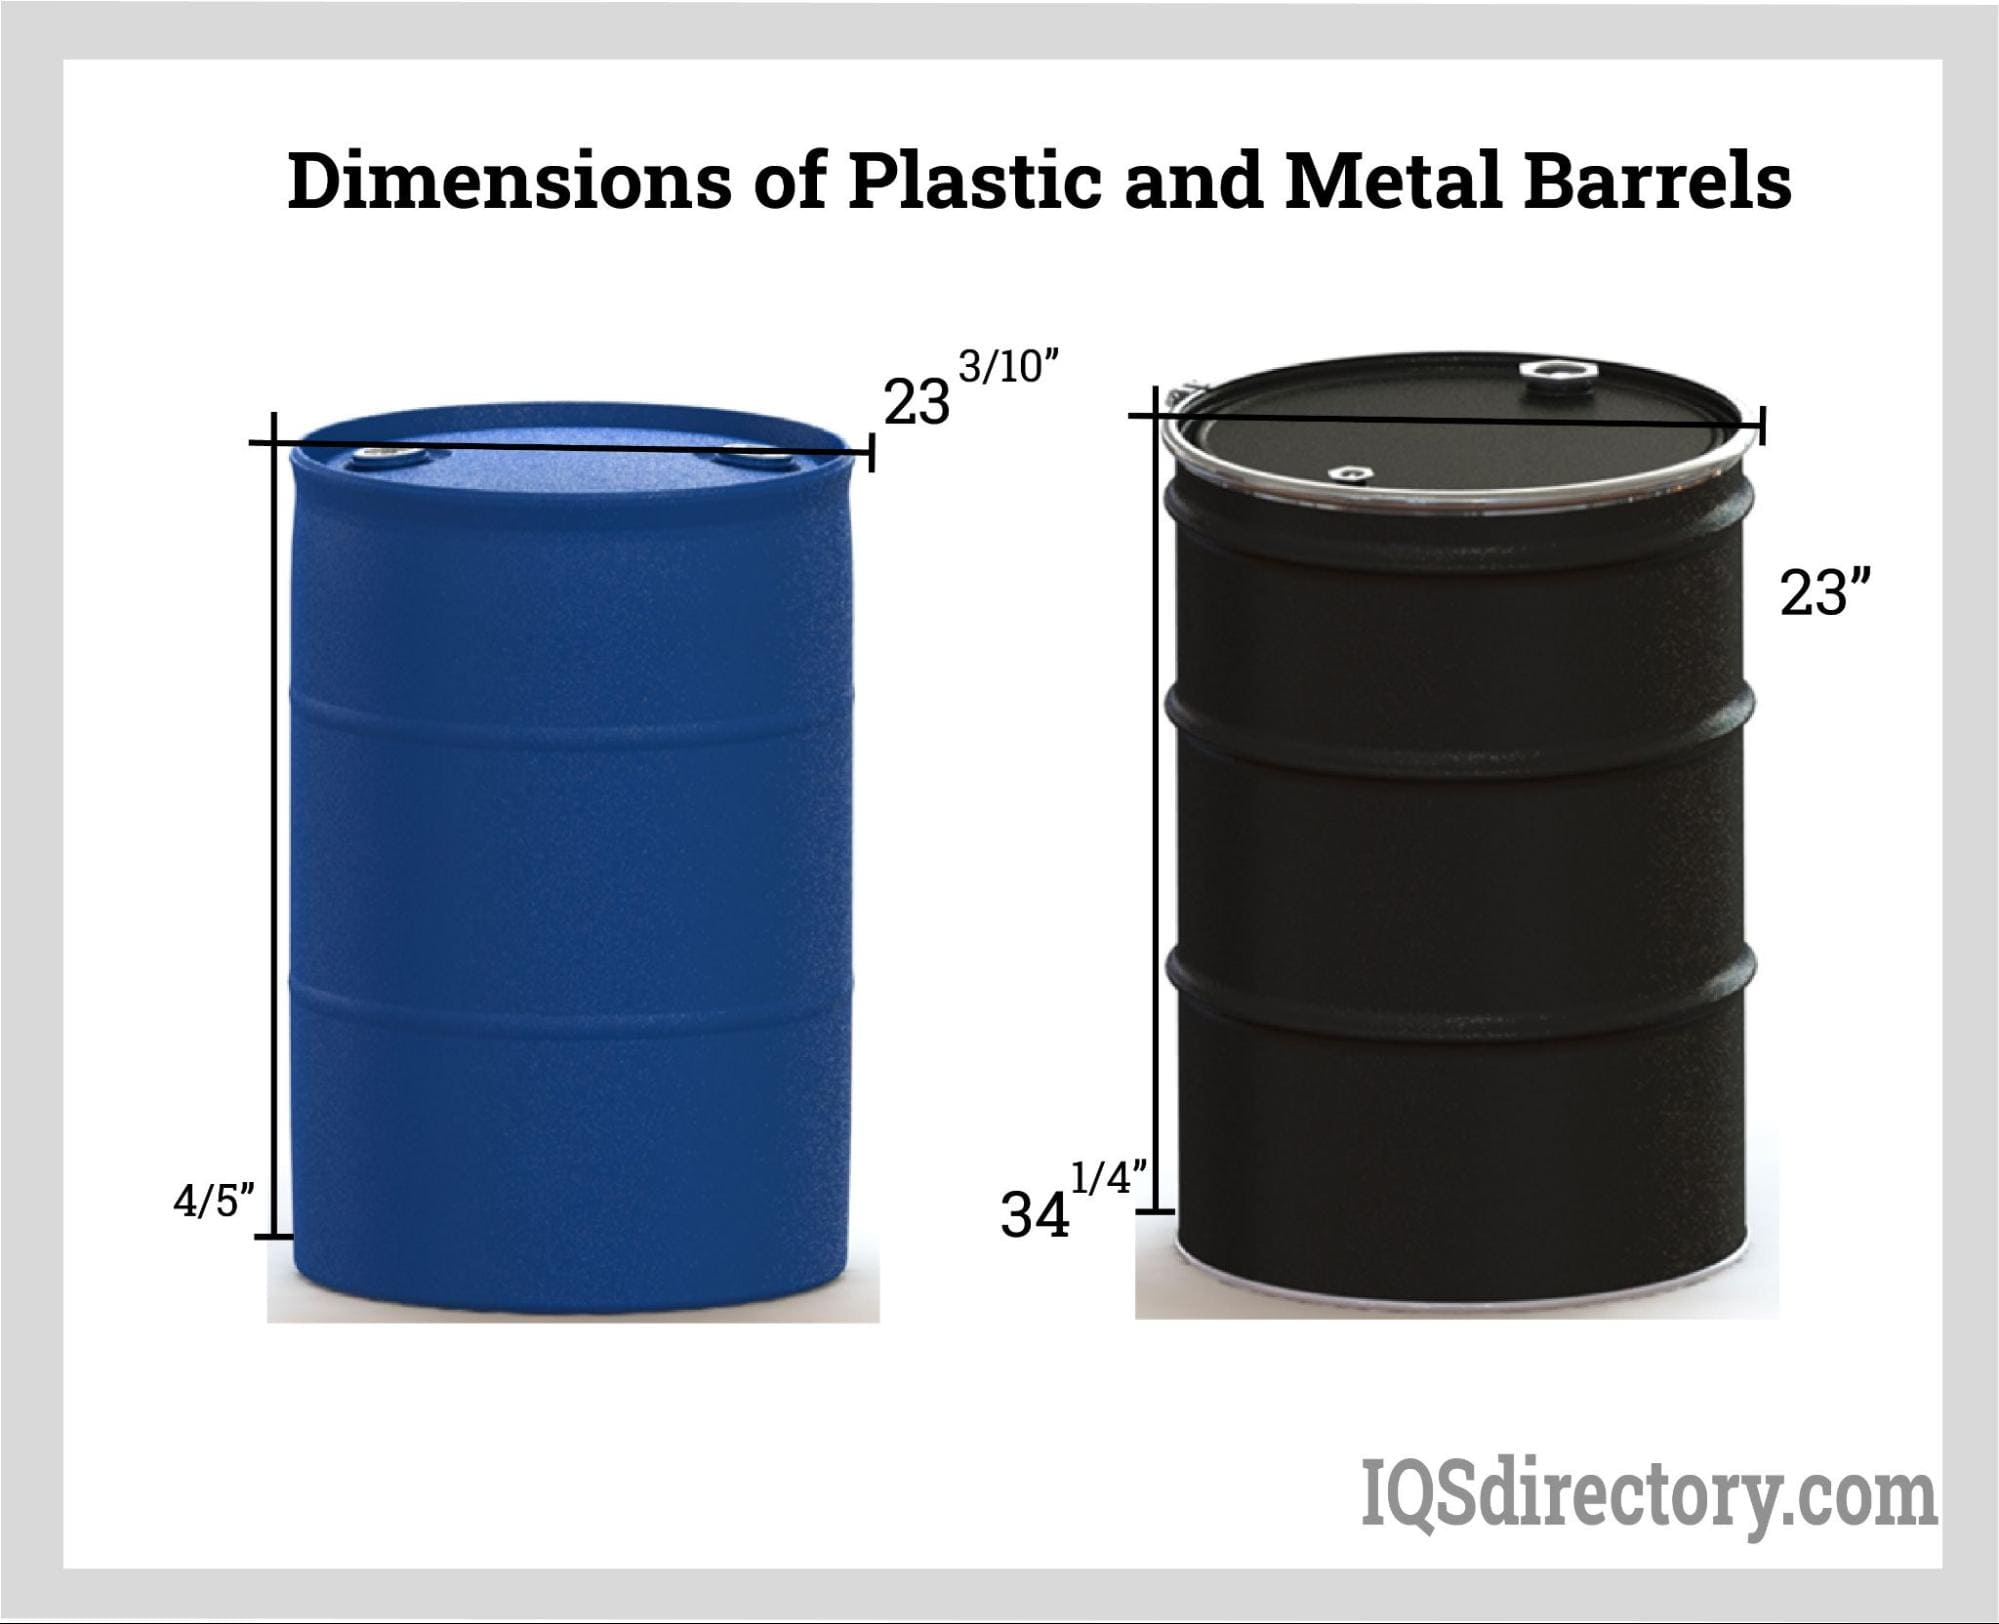 Dimensions of Plastic and Metal Barrels